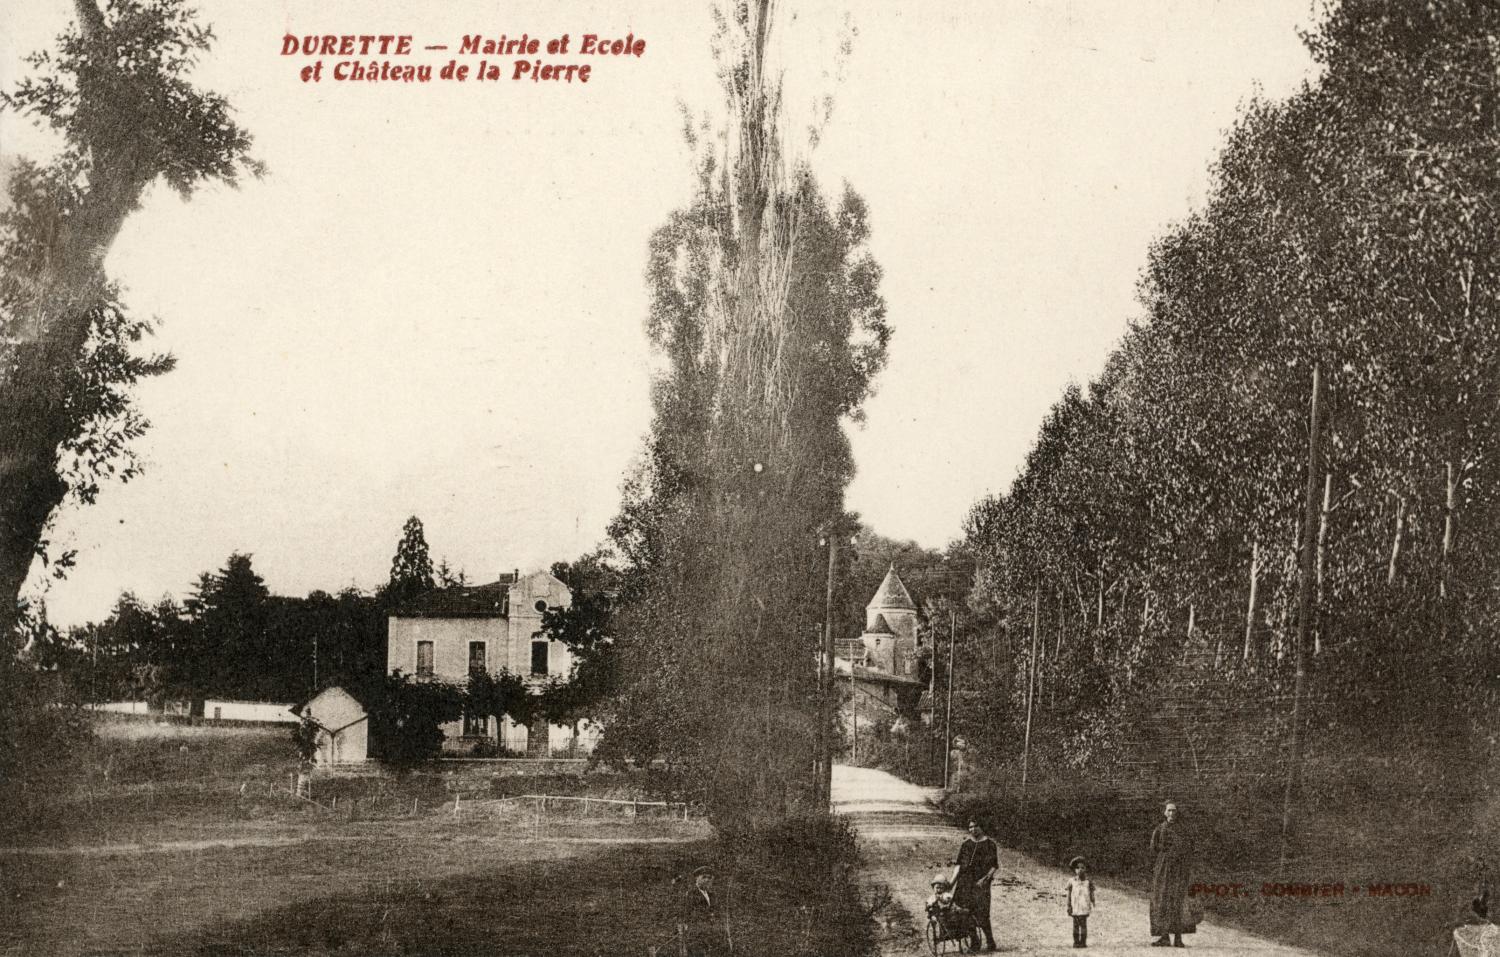 Durette. - Mairie et Ecole et Château de la Pierre